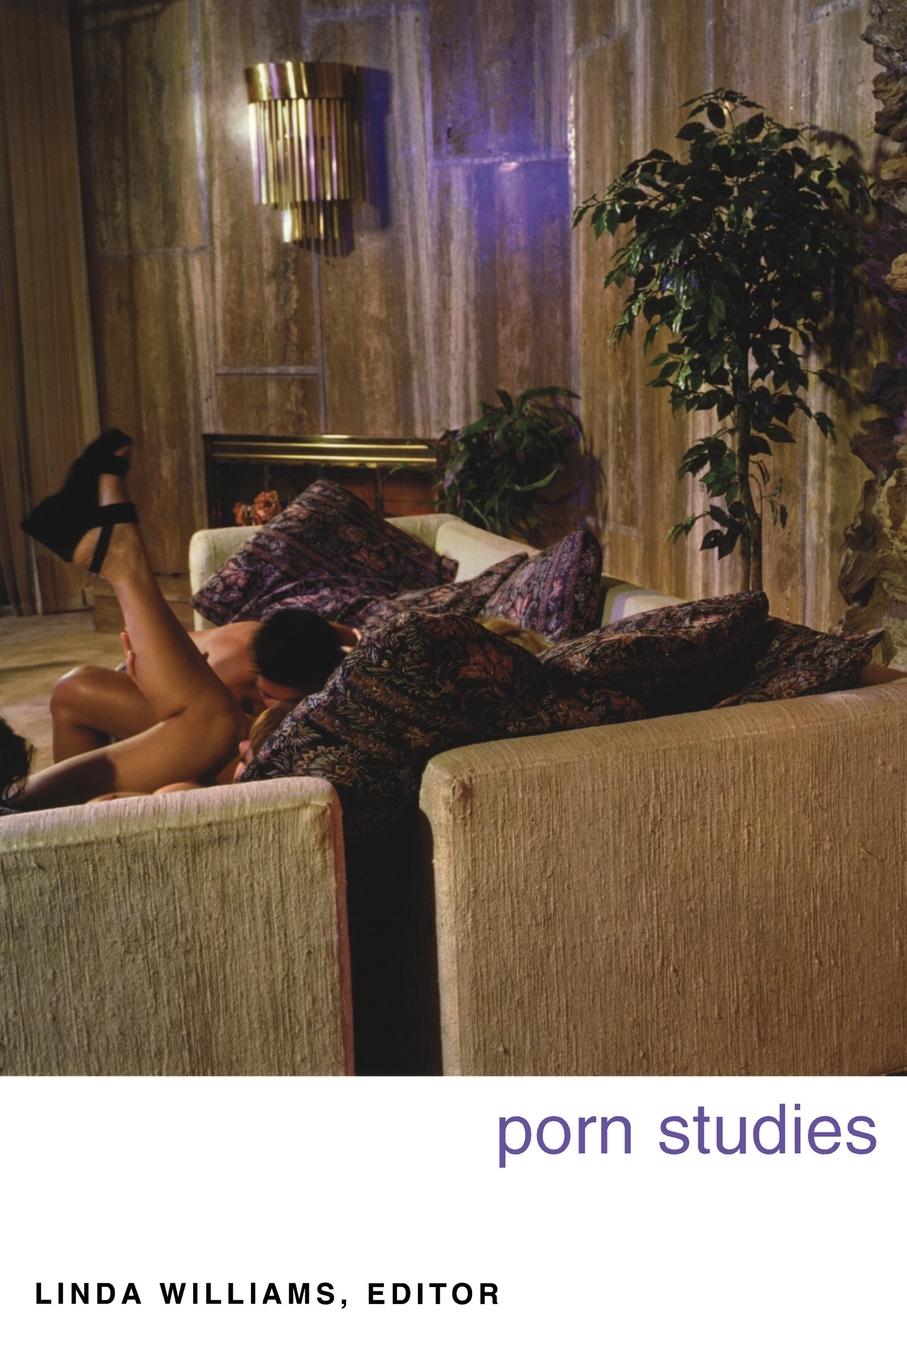 Porn Studies / Linda Williams / Taschenbuch / Kartoniert / Broschiert / Englisch / 2004 / Duke University Press / EAN 9780822333128 - Williams, Linda